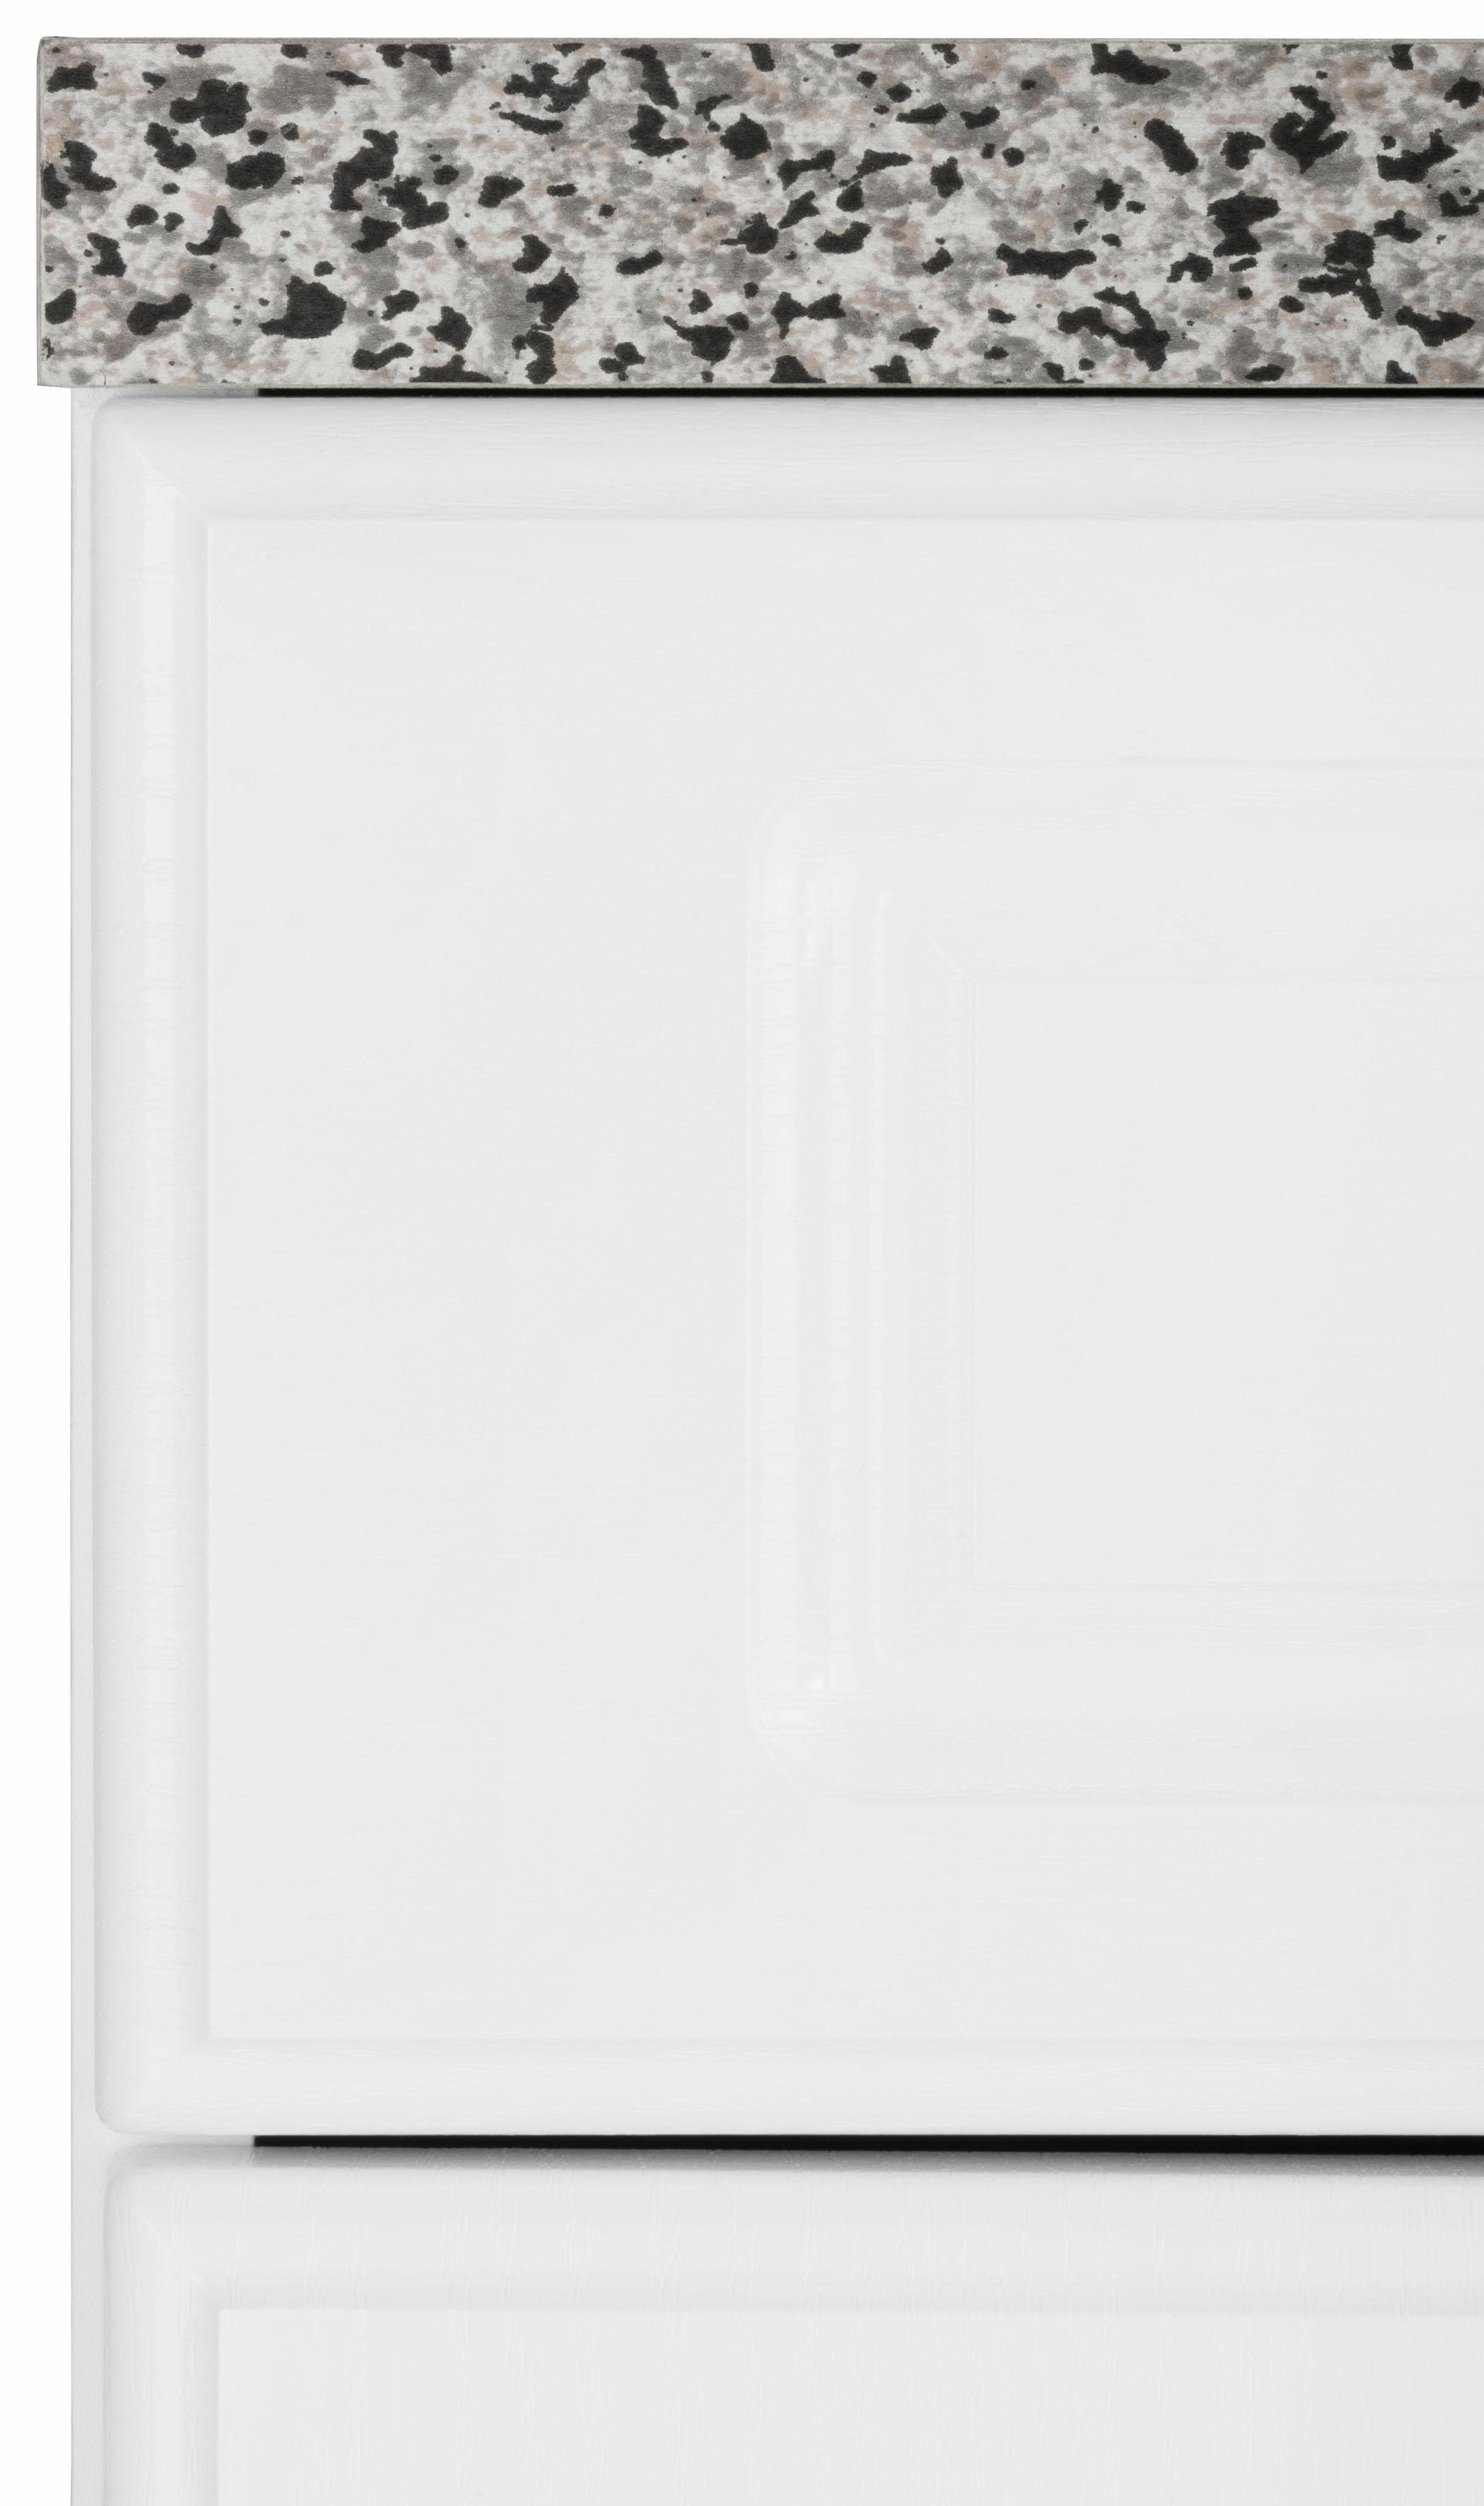 150 cm Linz Küchen Weiß | weiß wiho Unterschrank breit